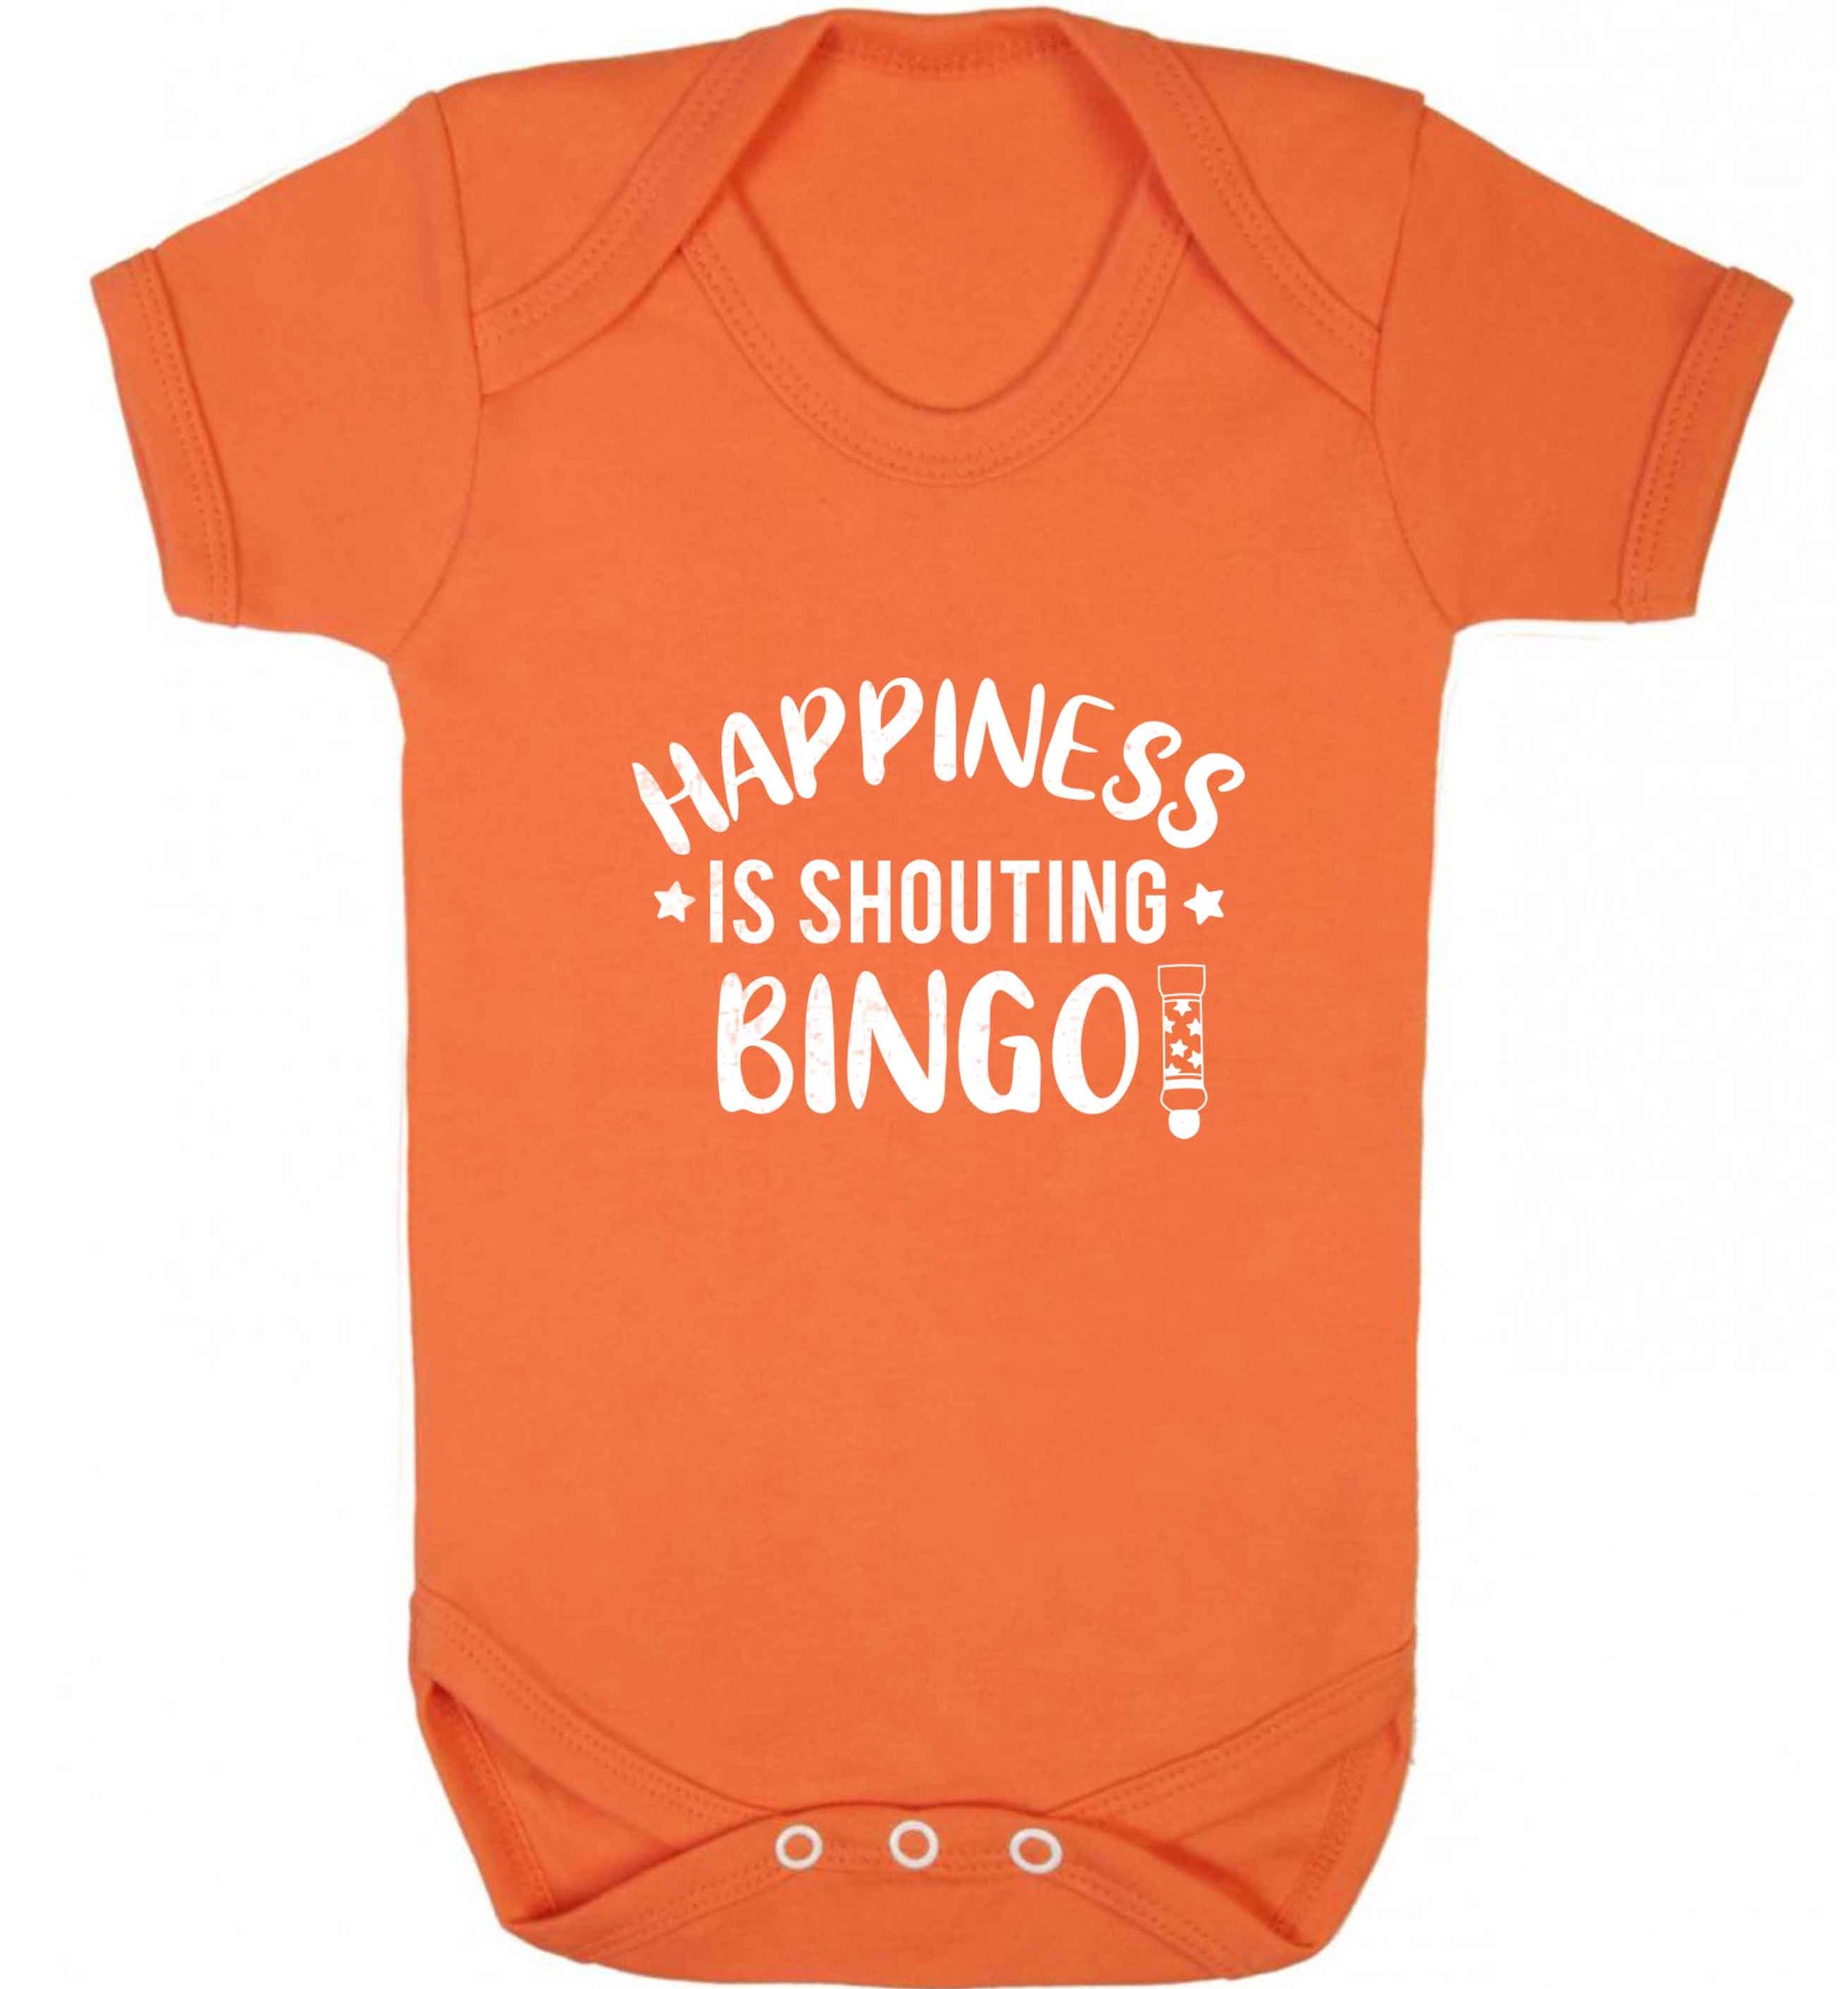 Happiness is shouting bingo! baby vest orange 18-24 months